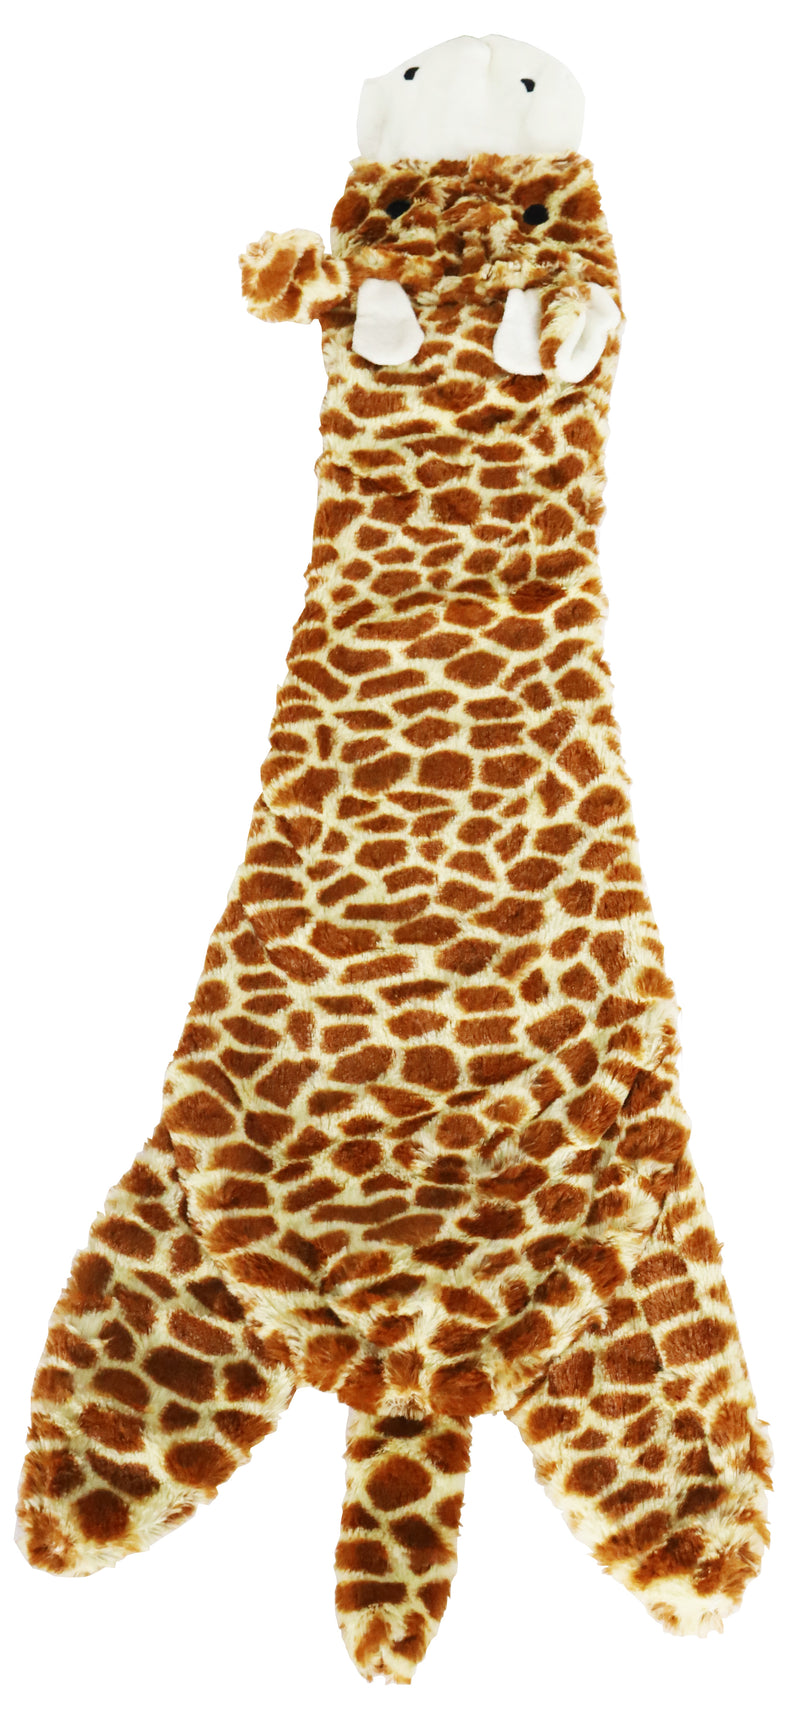 Hondenspeelgoed Boon hond speelgoed Giraffe plat met piep xxl grijs 85 cm